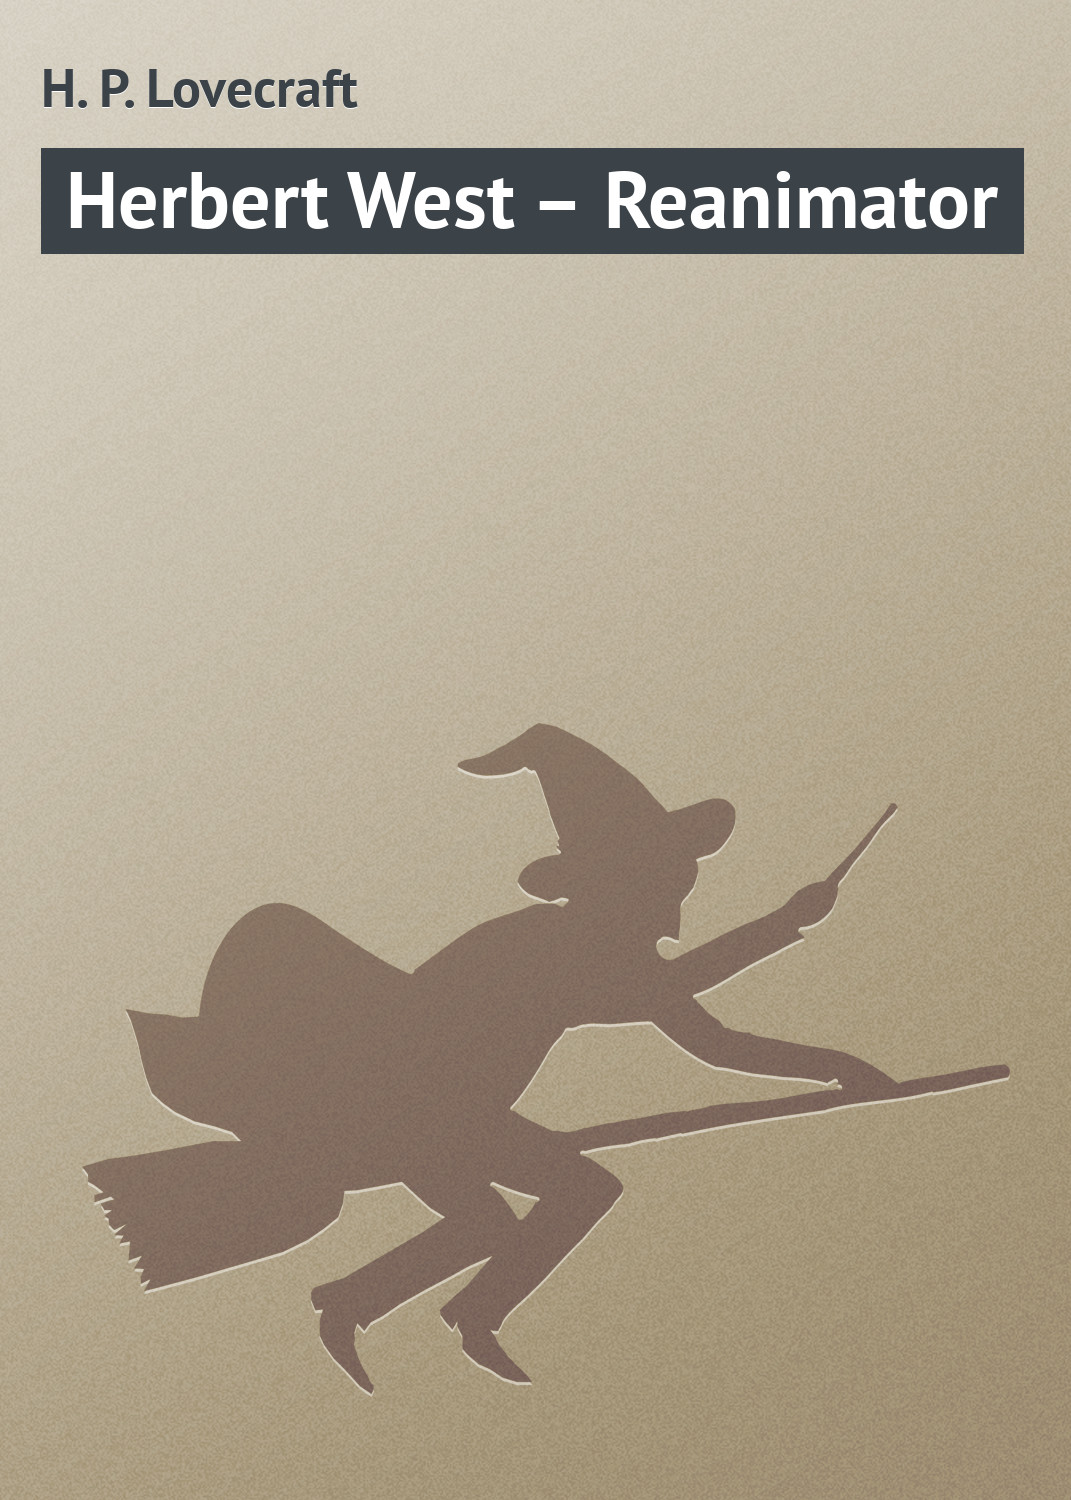 Книга Herbert West – Reanimator из серии , созданная H. Lovecraft, может относится к жанру Зарубежное: Прочее, Зарубежная классика, Ужасы и Мистика. Стоимость электронной книги Herbert West – Reanimator с идентификатором 7772376 составляет 29.95 руб.